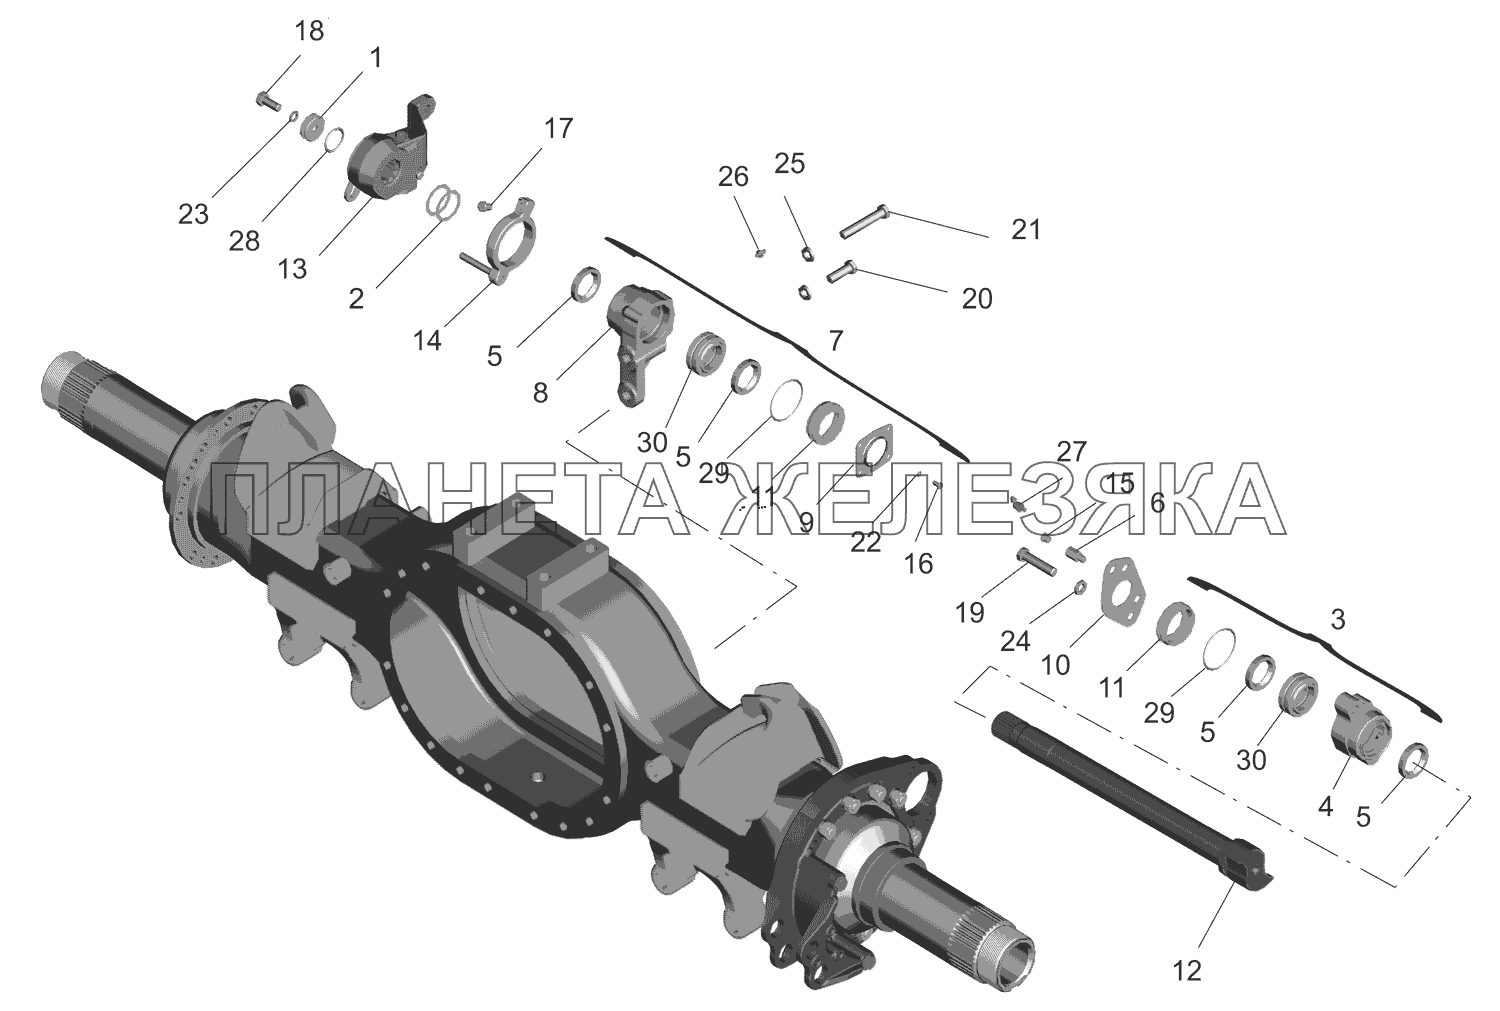 Привод тормозного механизма задних колес и средних колес МАЗ-630333